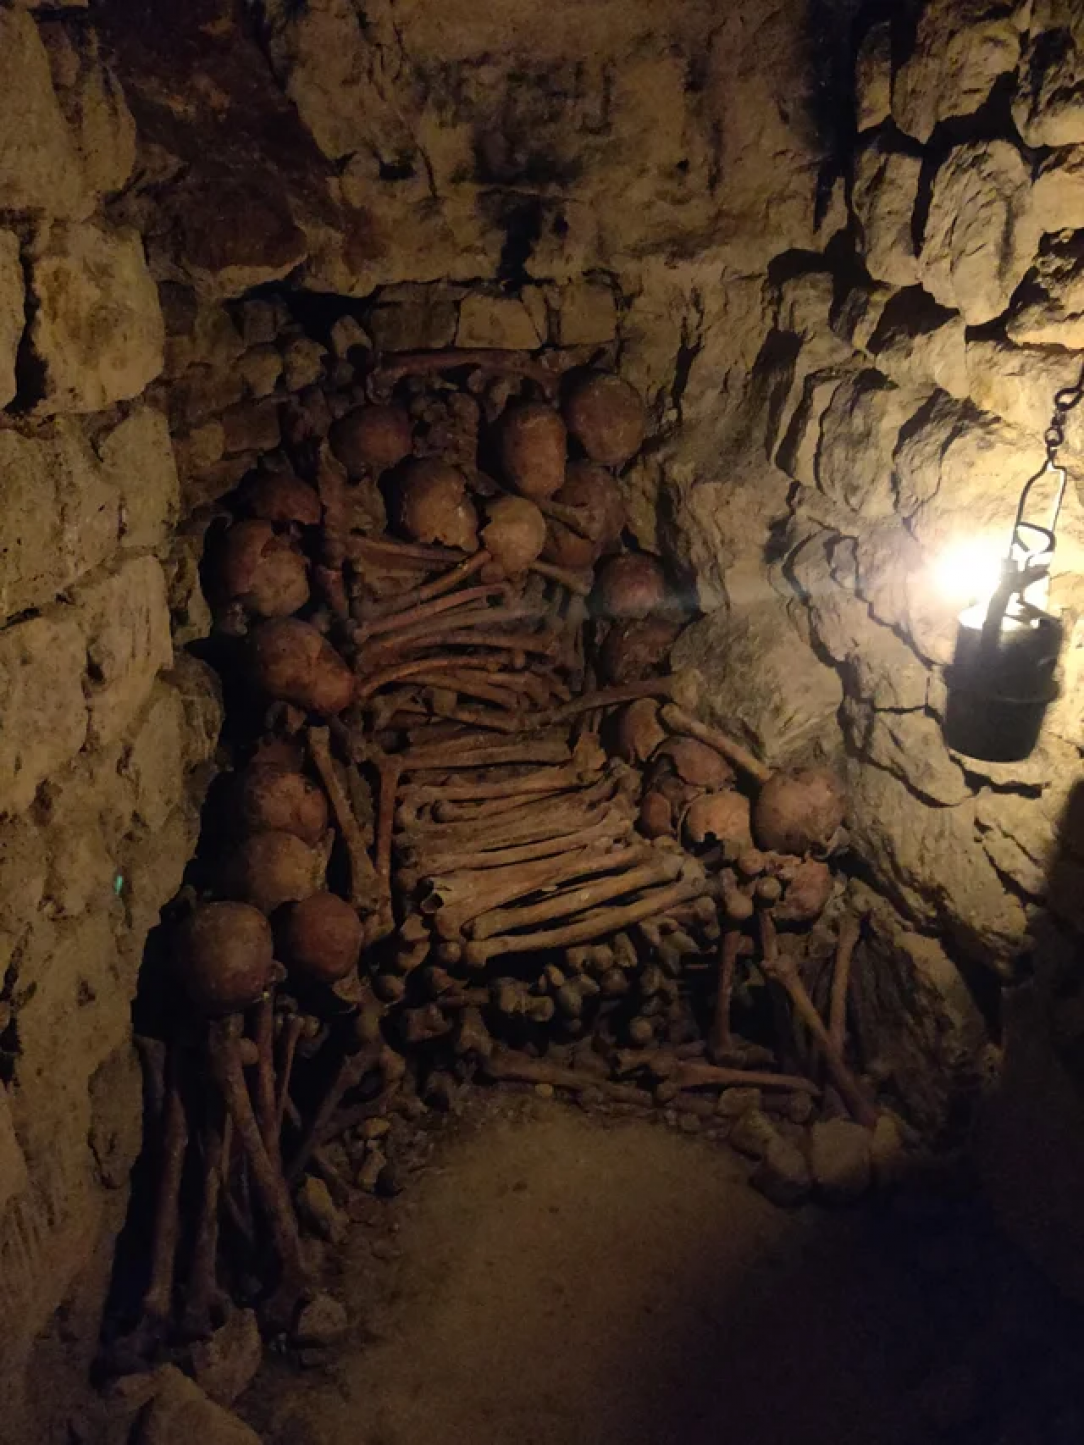 Bone throne in the Paris catacombs